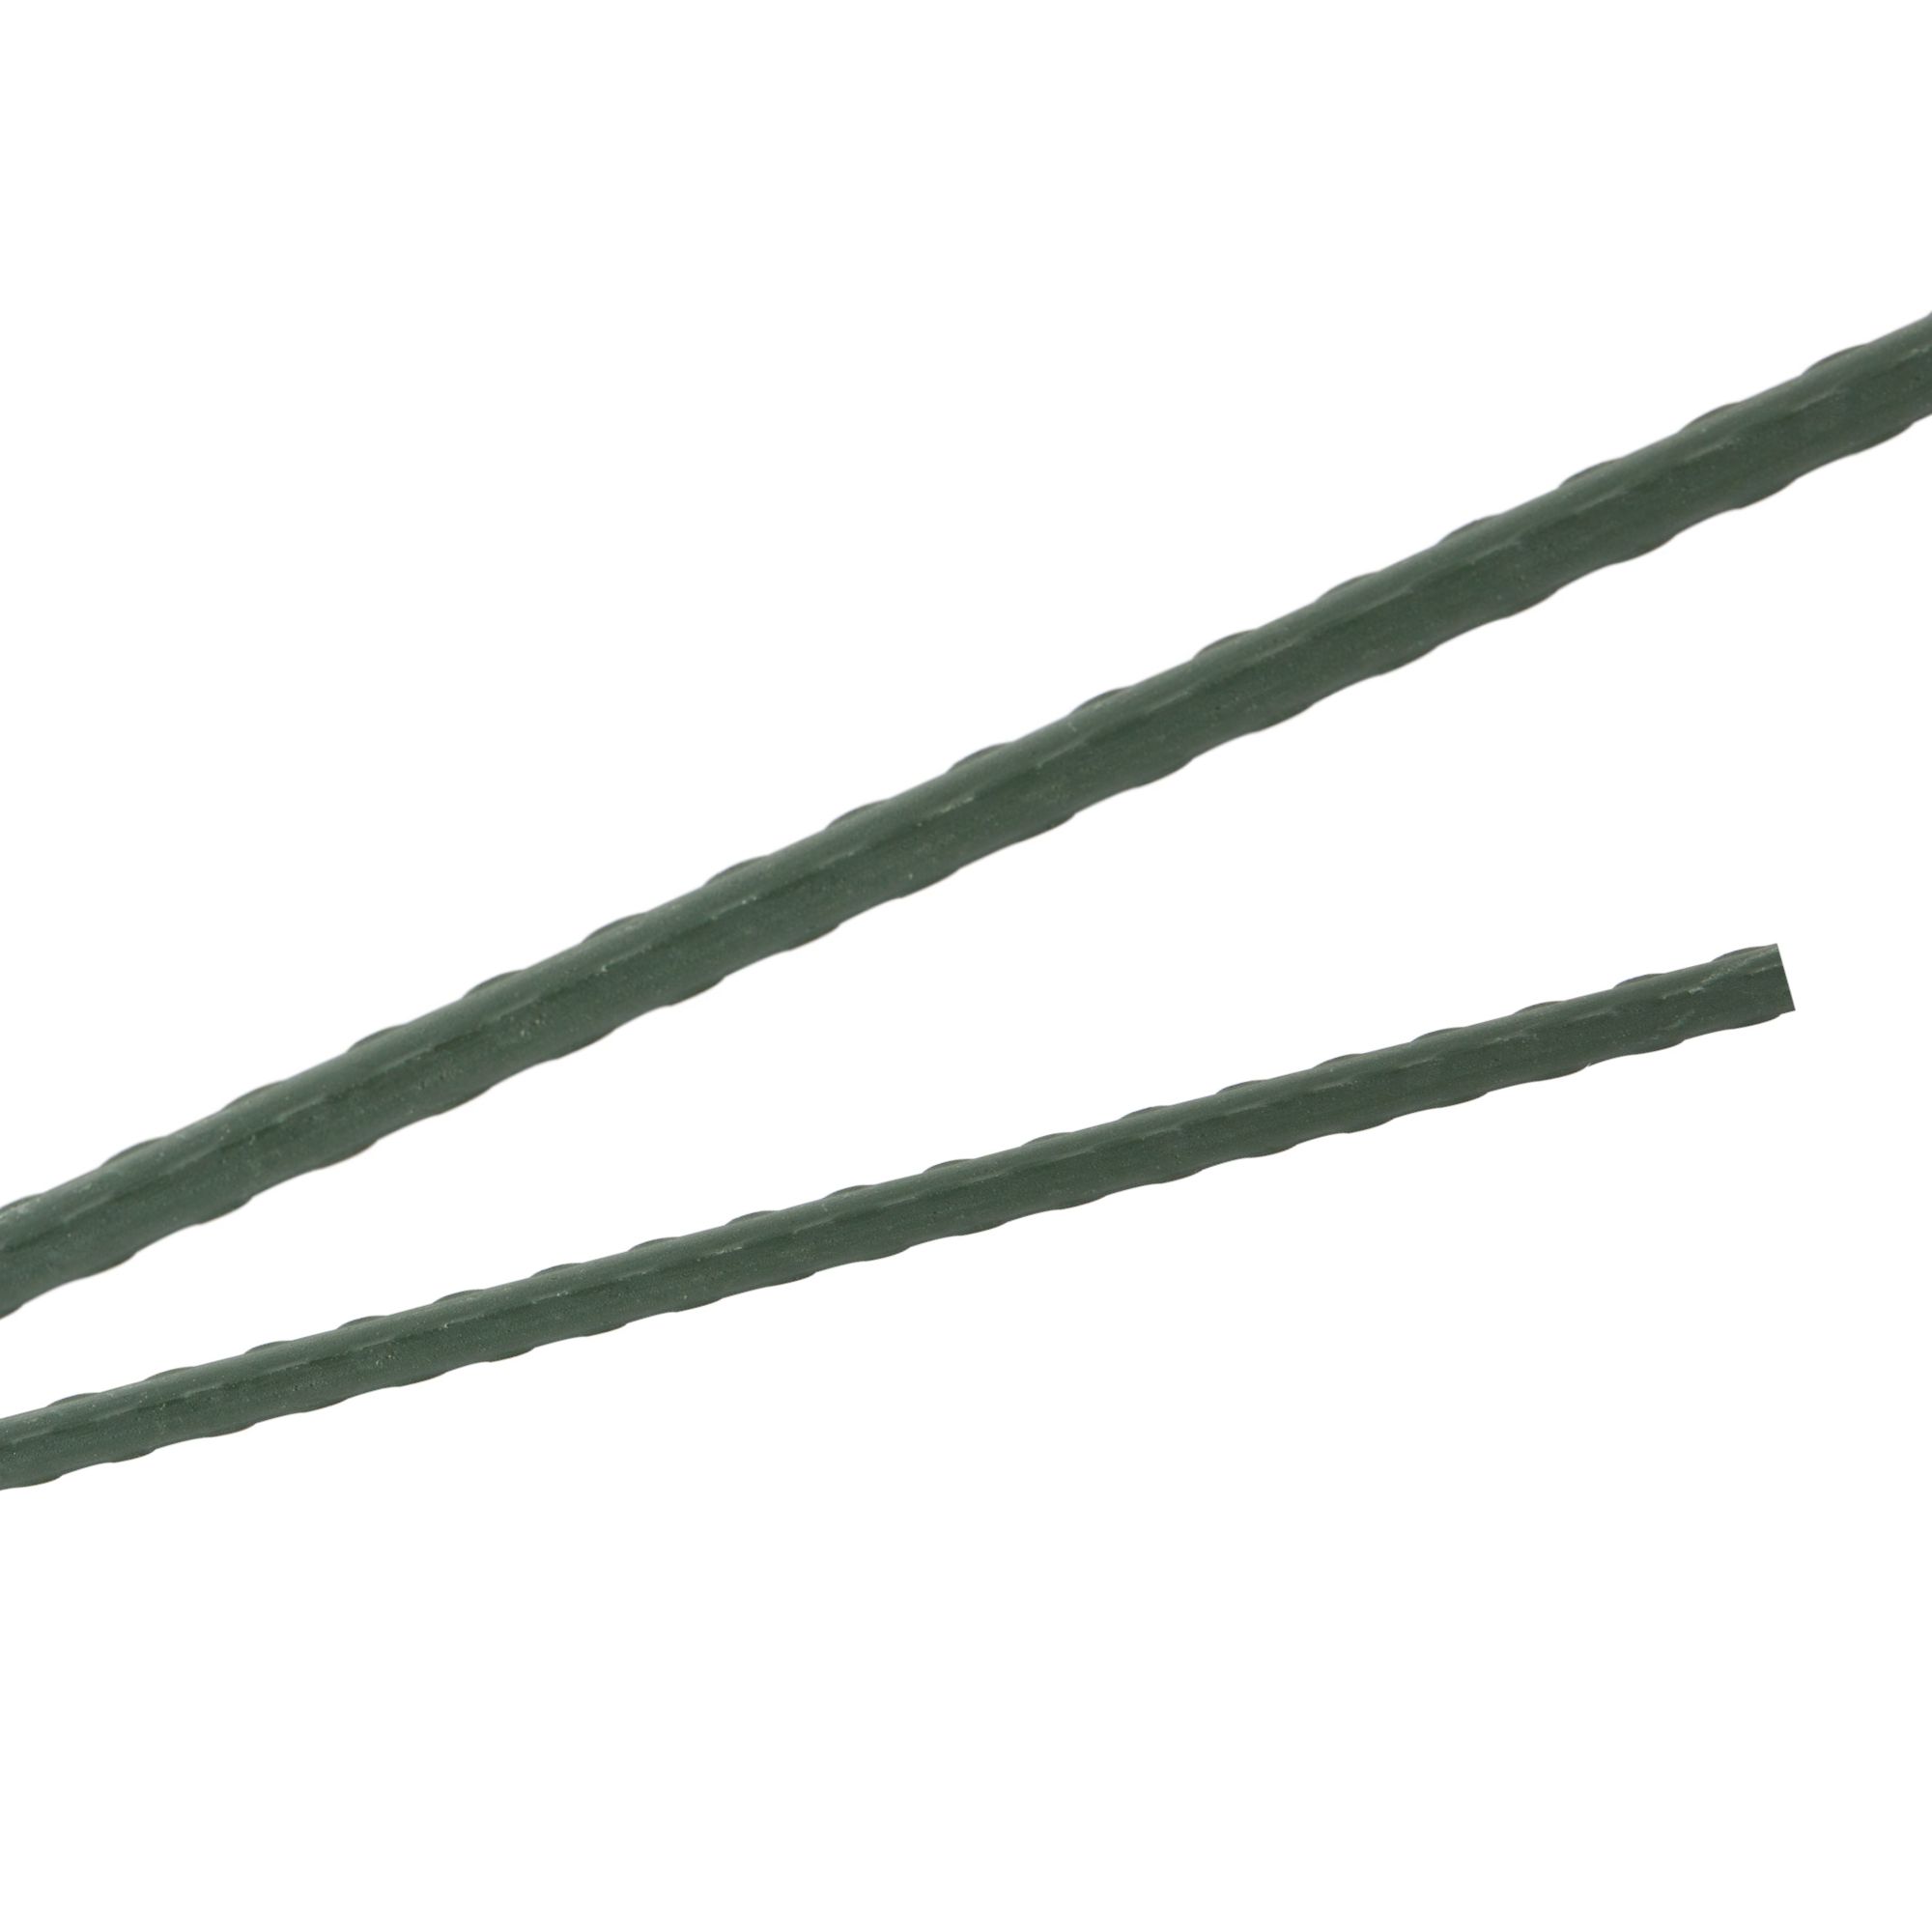 Tyč podpěrná, 8mm, 60cm, kov+PVC, zelená 0.055000 Kg GIGA Sklad20 211778 295